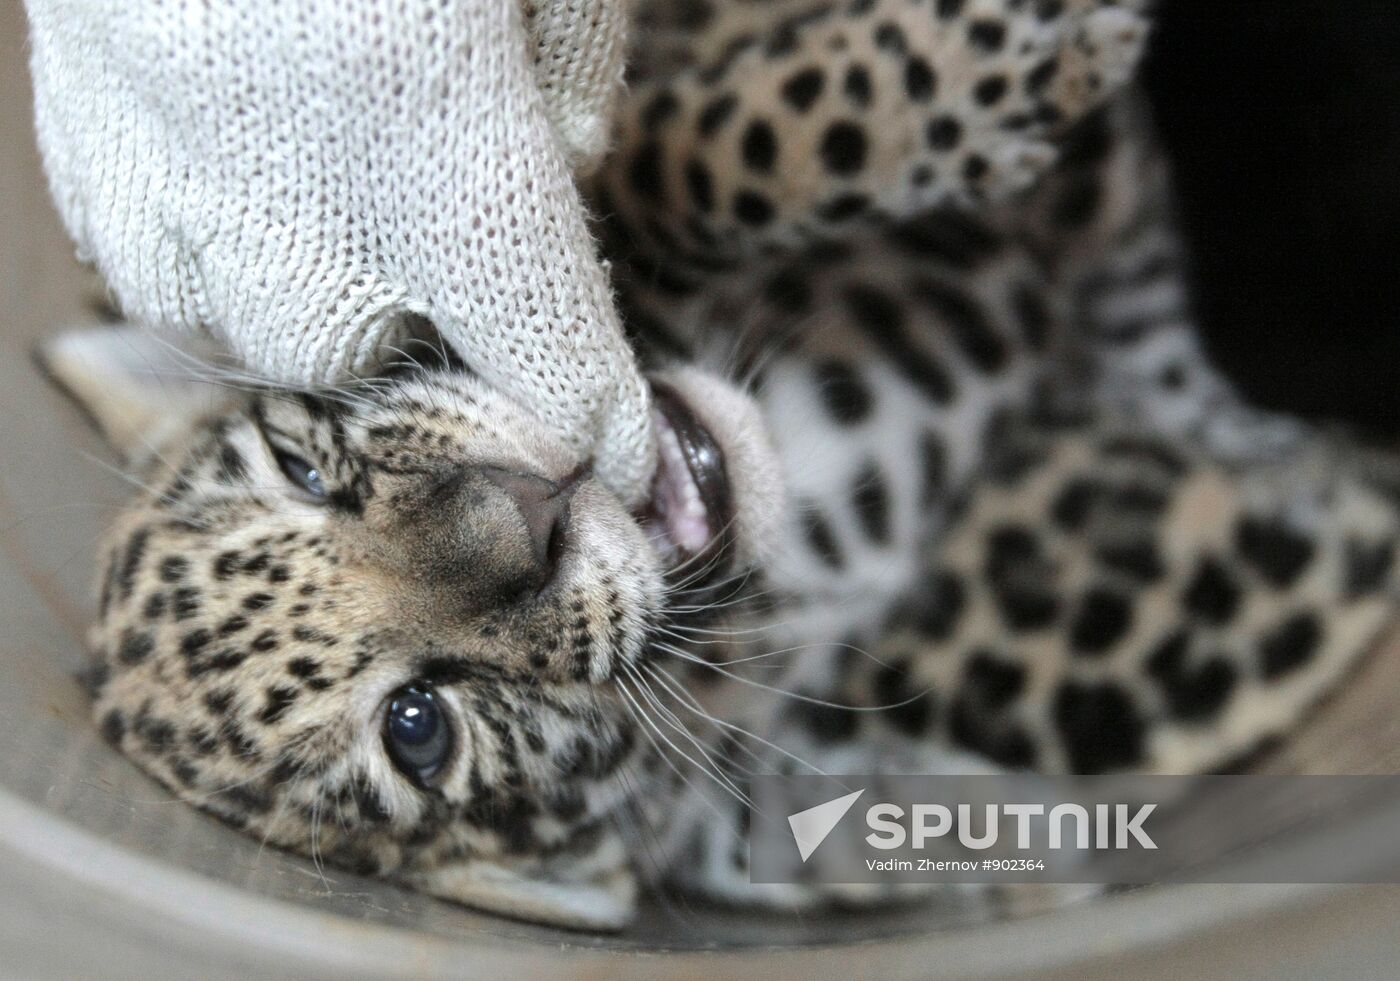 Newborn jaguar cubs at St. Petersburg Zoo